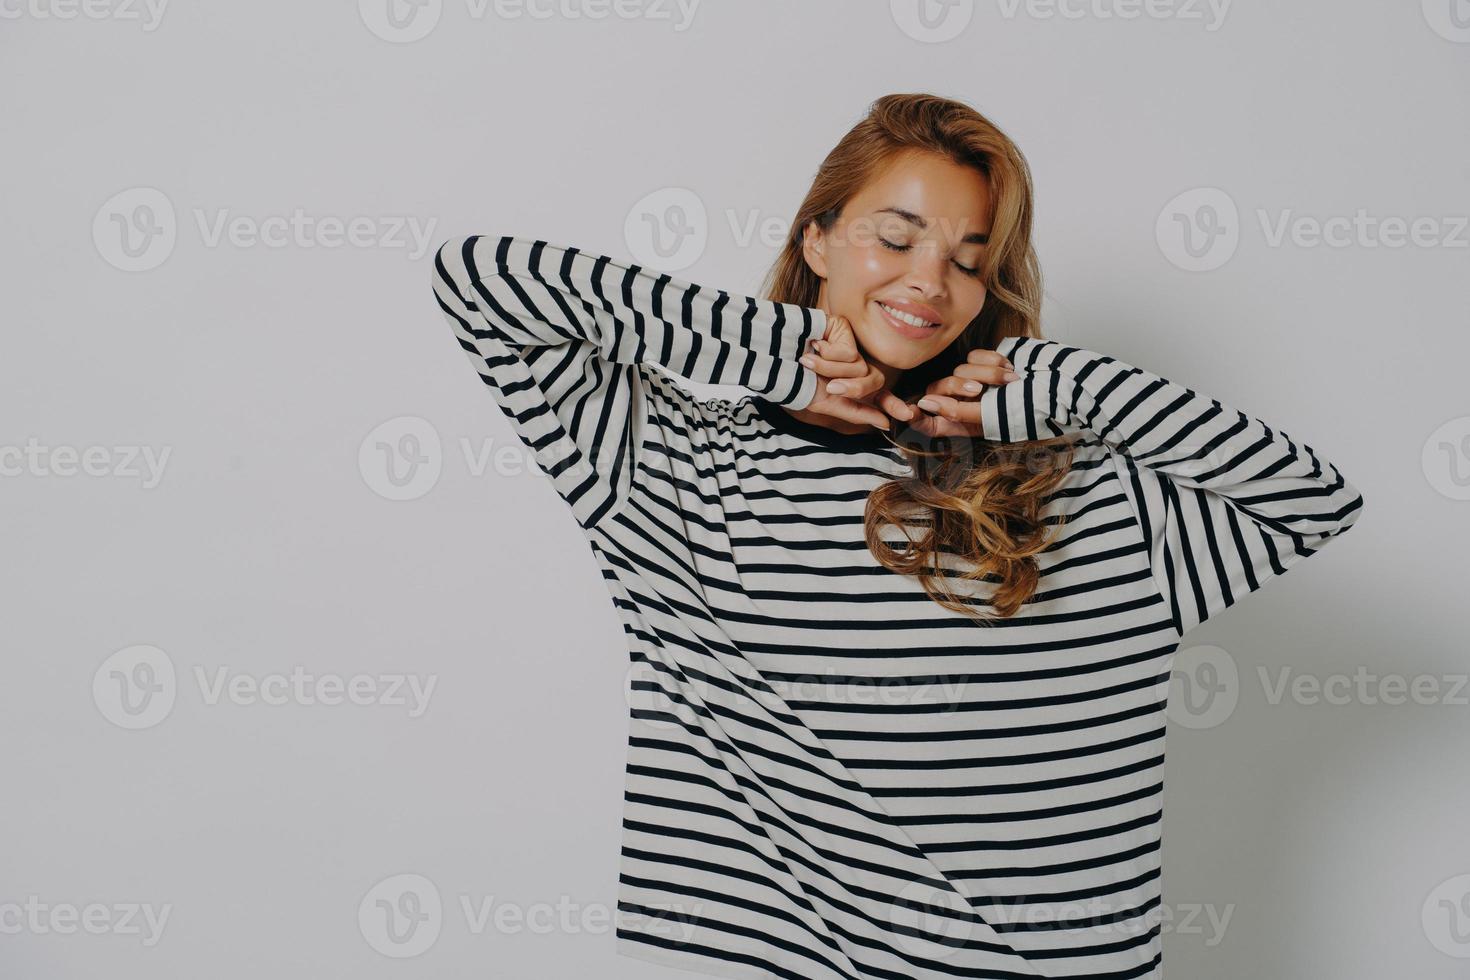 Oberkörperaufnahme einer erfreuten jungen Frau hält die Augen geschlossen, lächelt sanft und zeigt Zähne foto